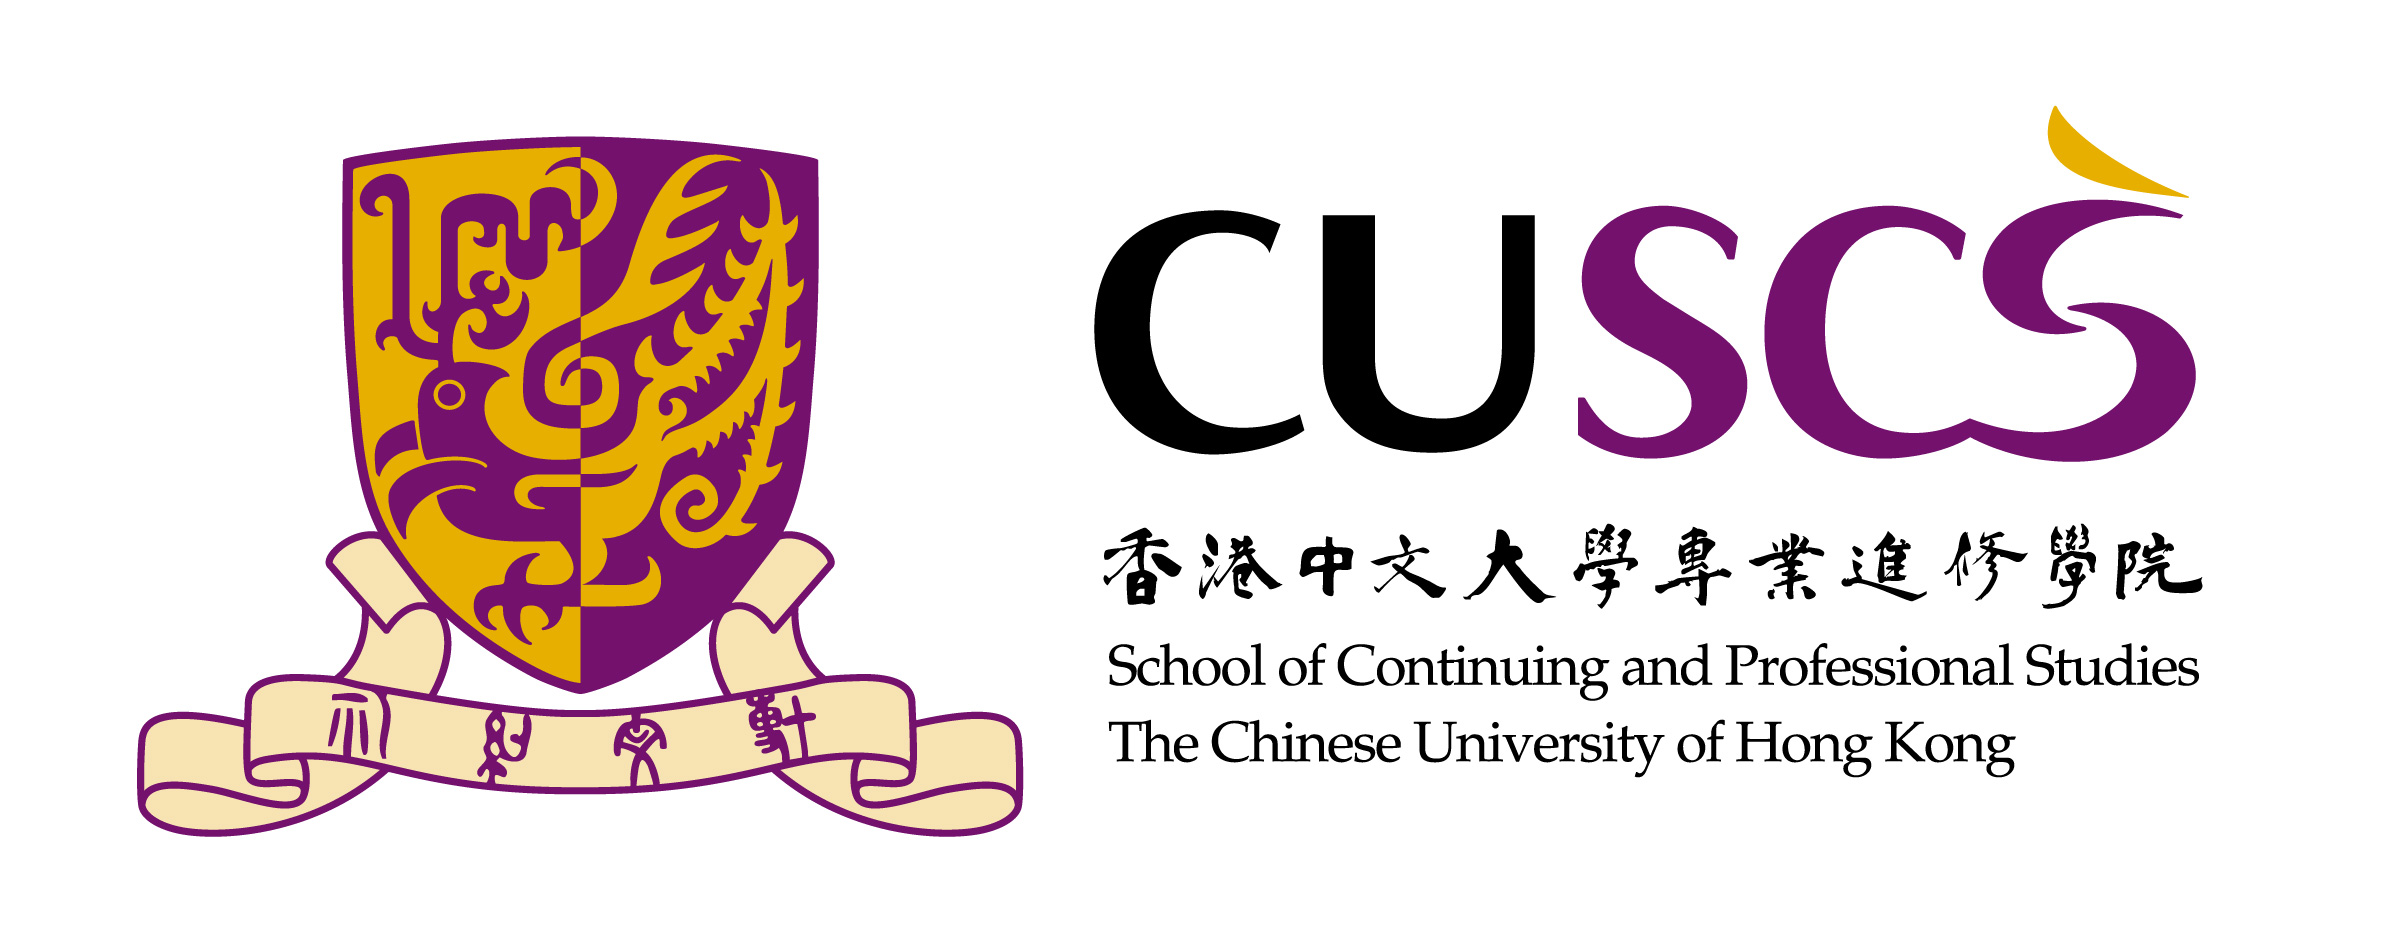 CUSCS_logo